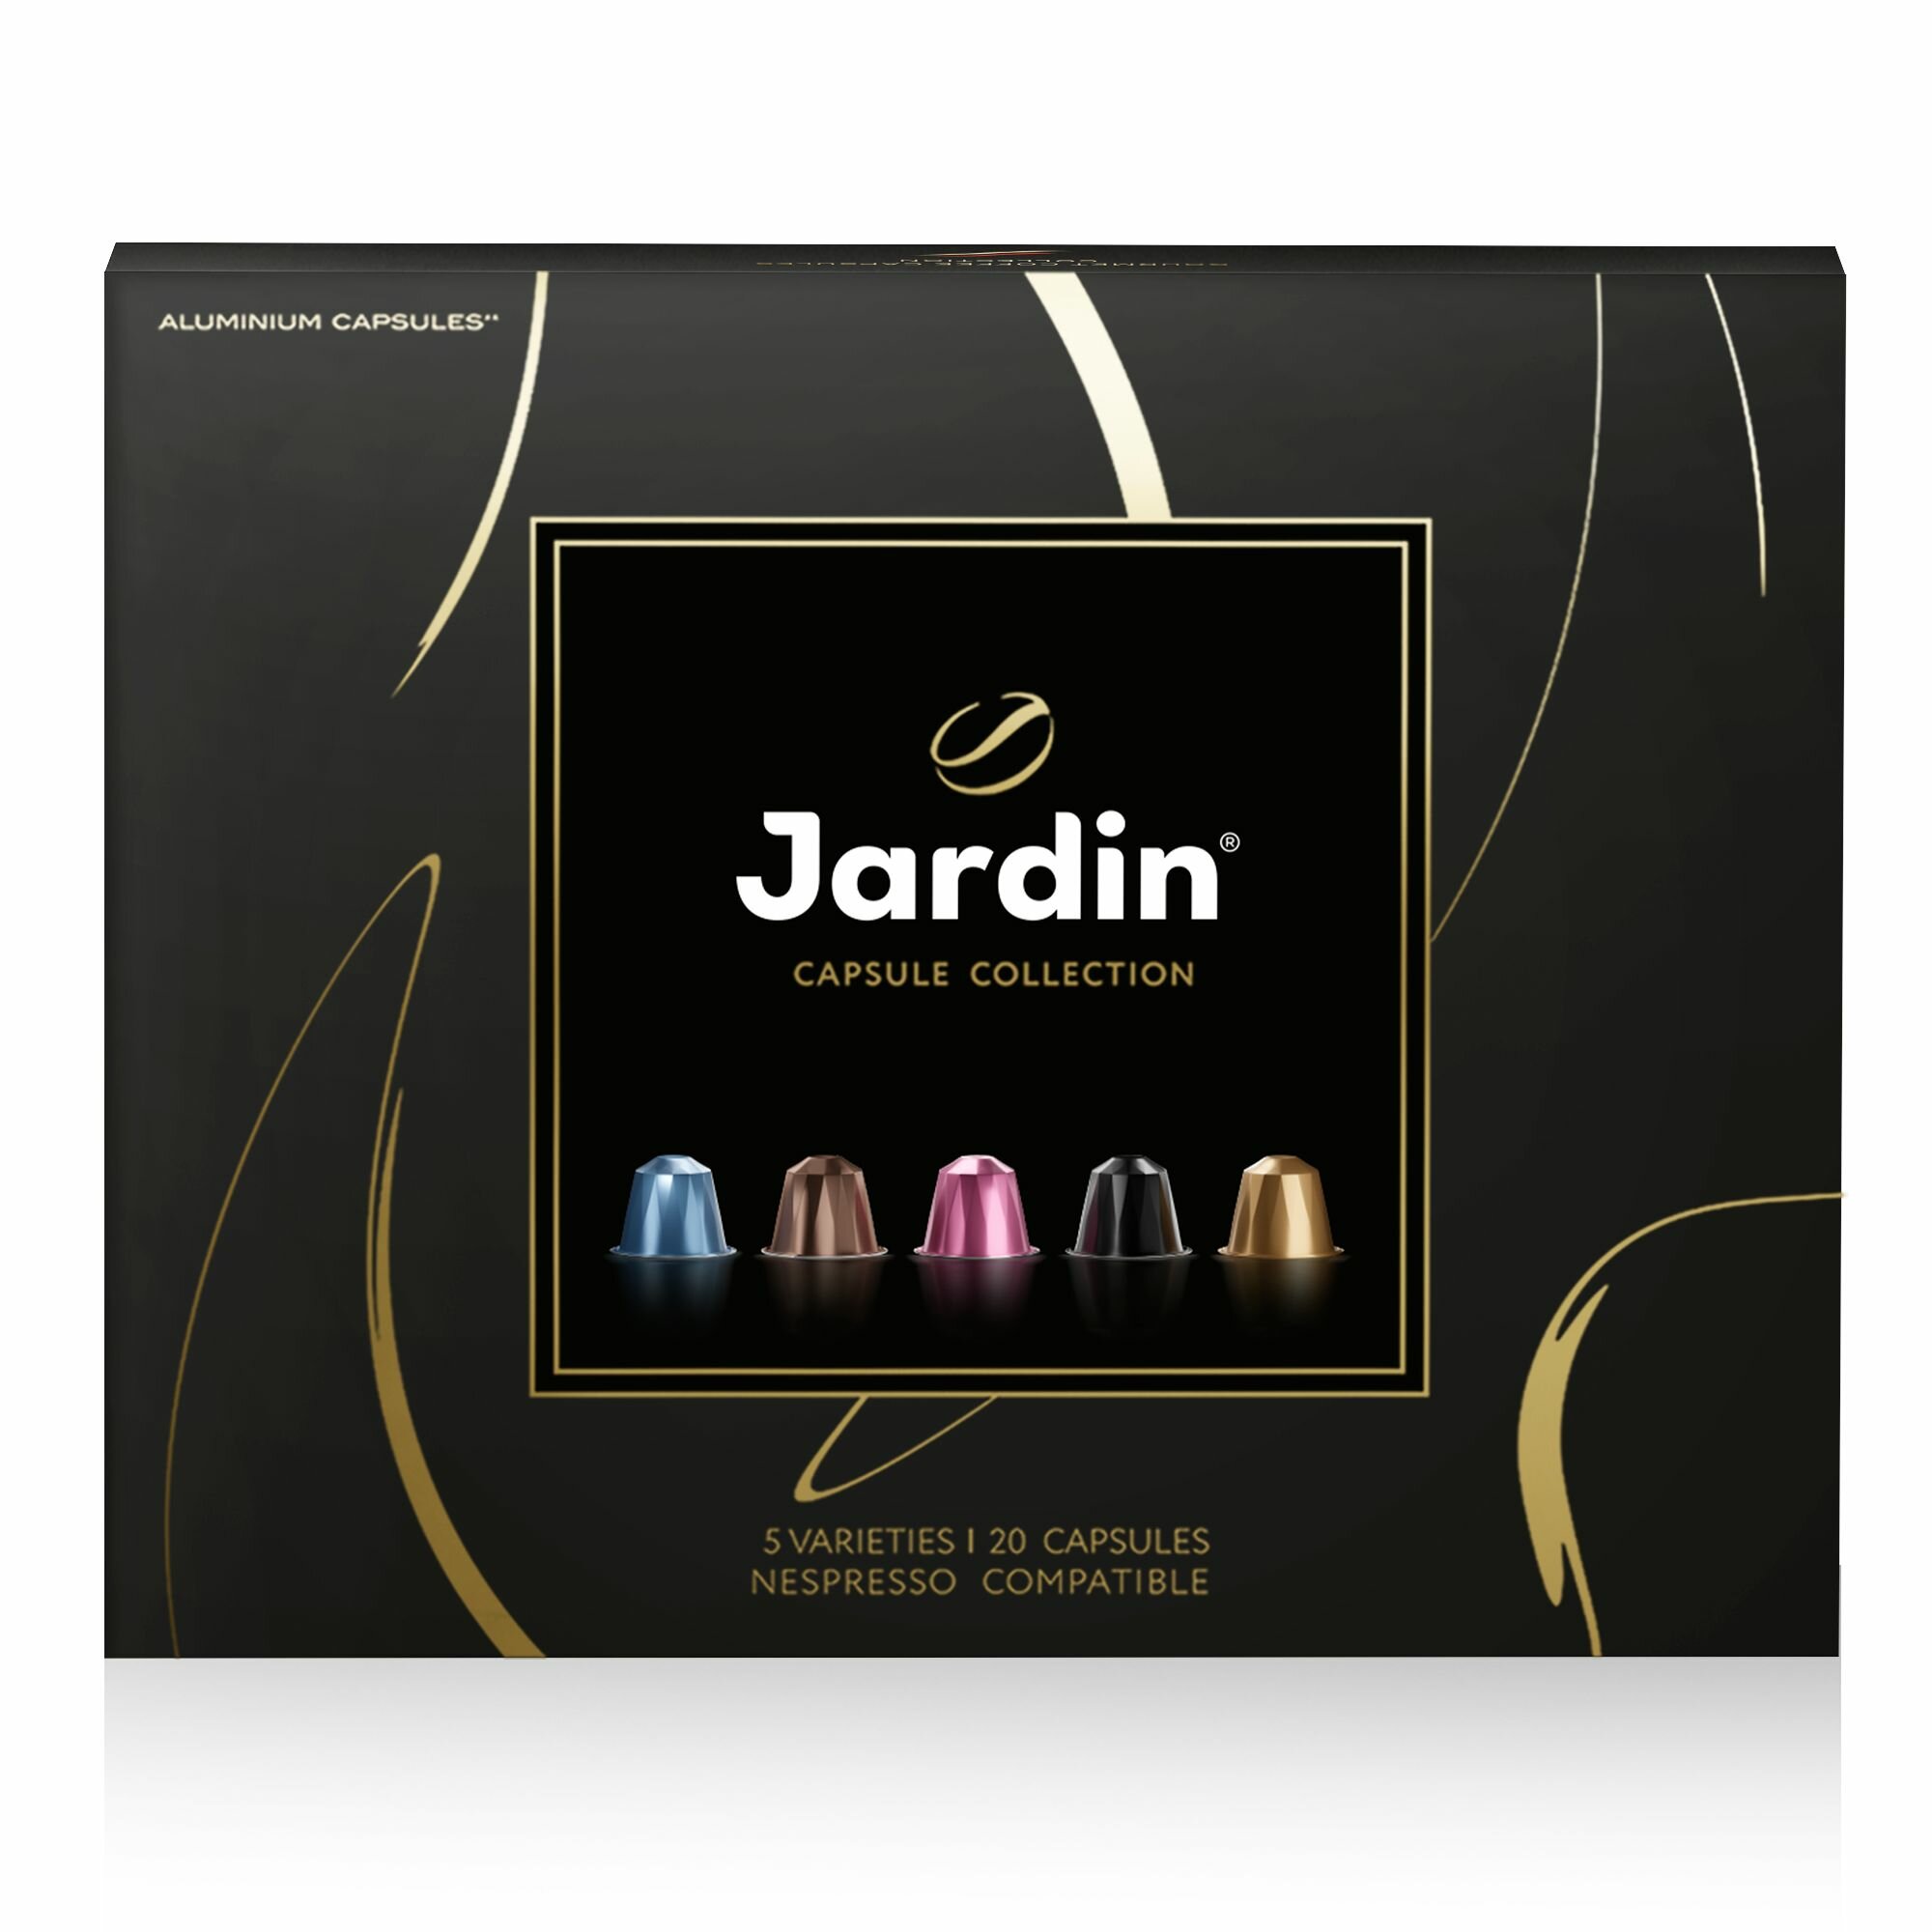 Кофе Jardin в капсулах набор ассорти (5 видов;20 капсул), подарок на 8 марта, подарок на день рождения